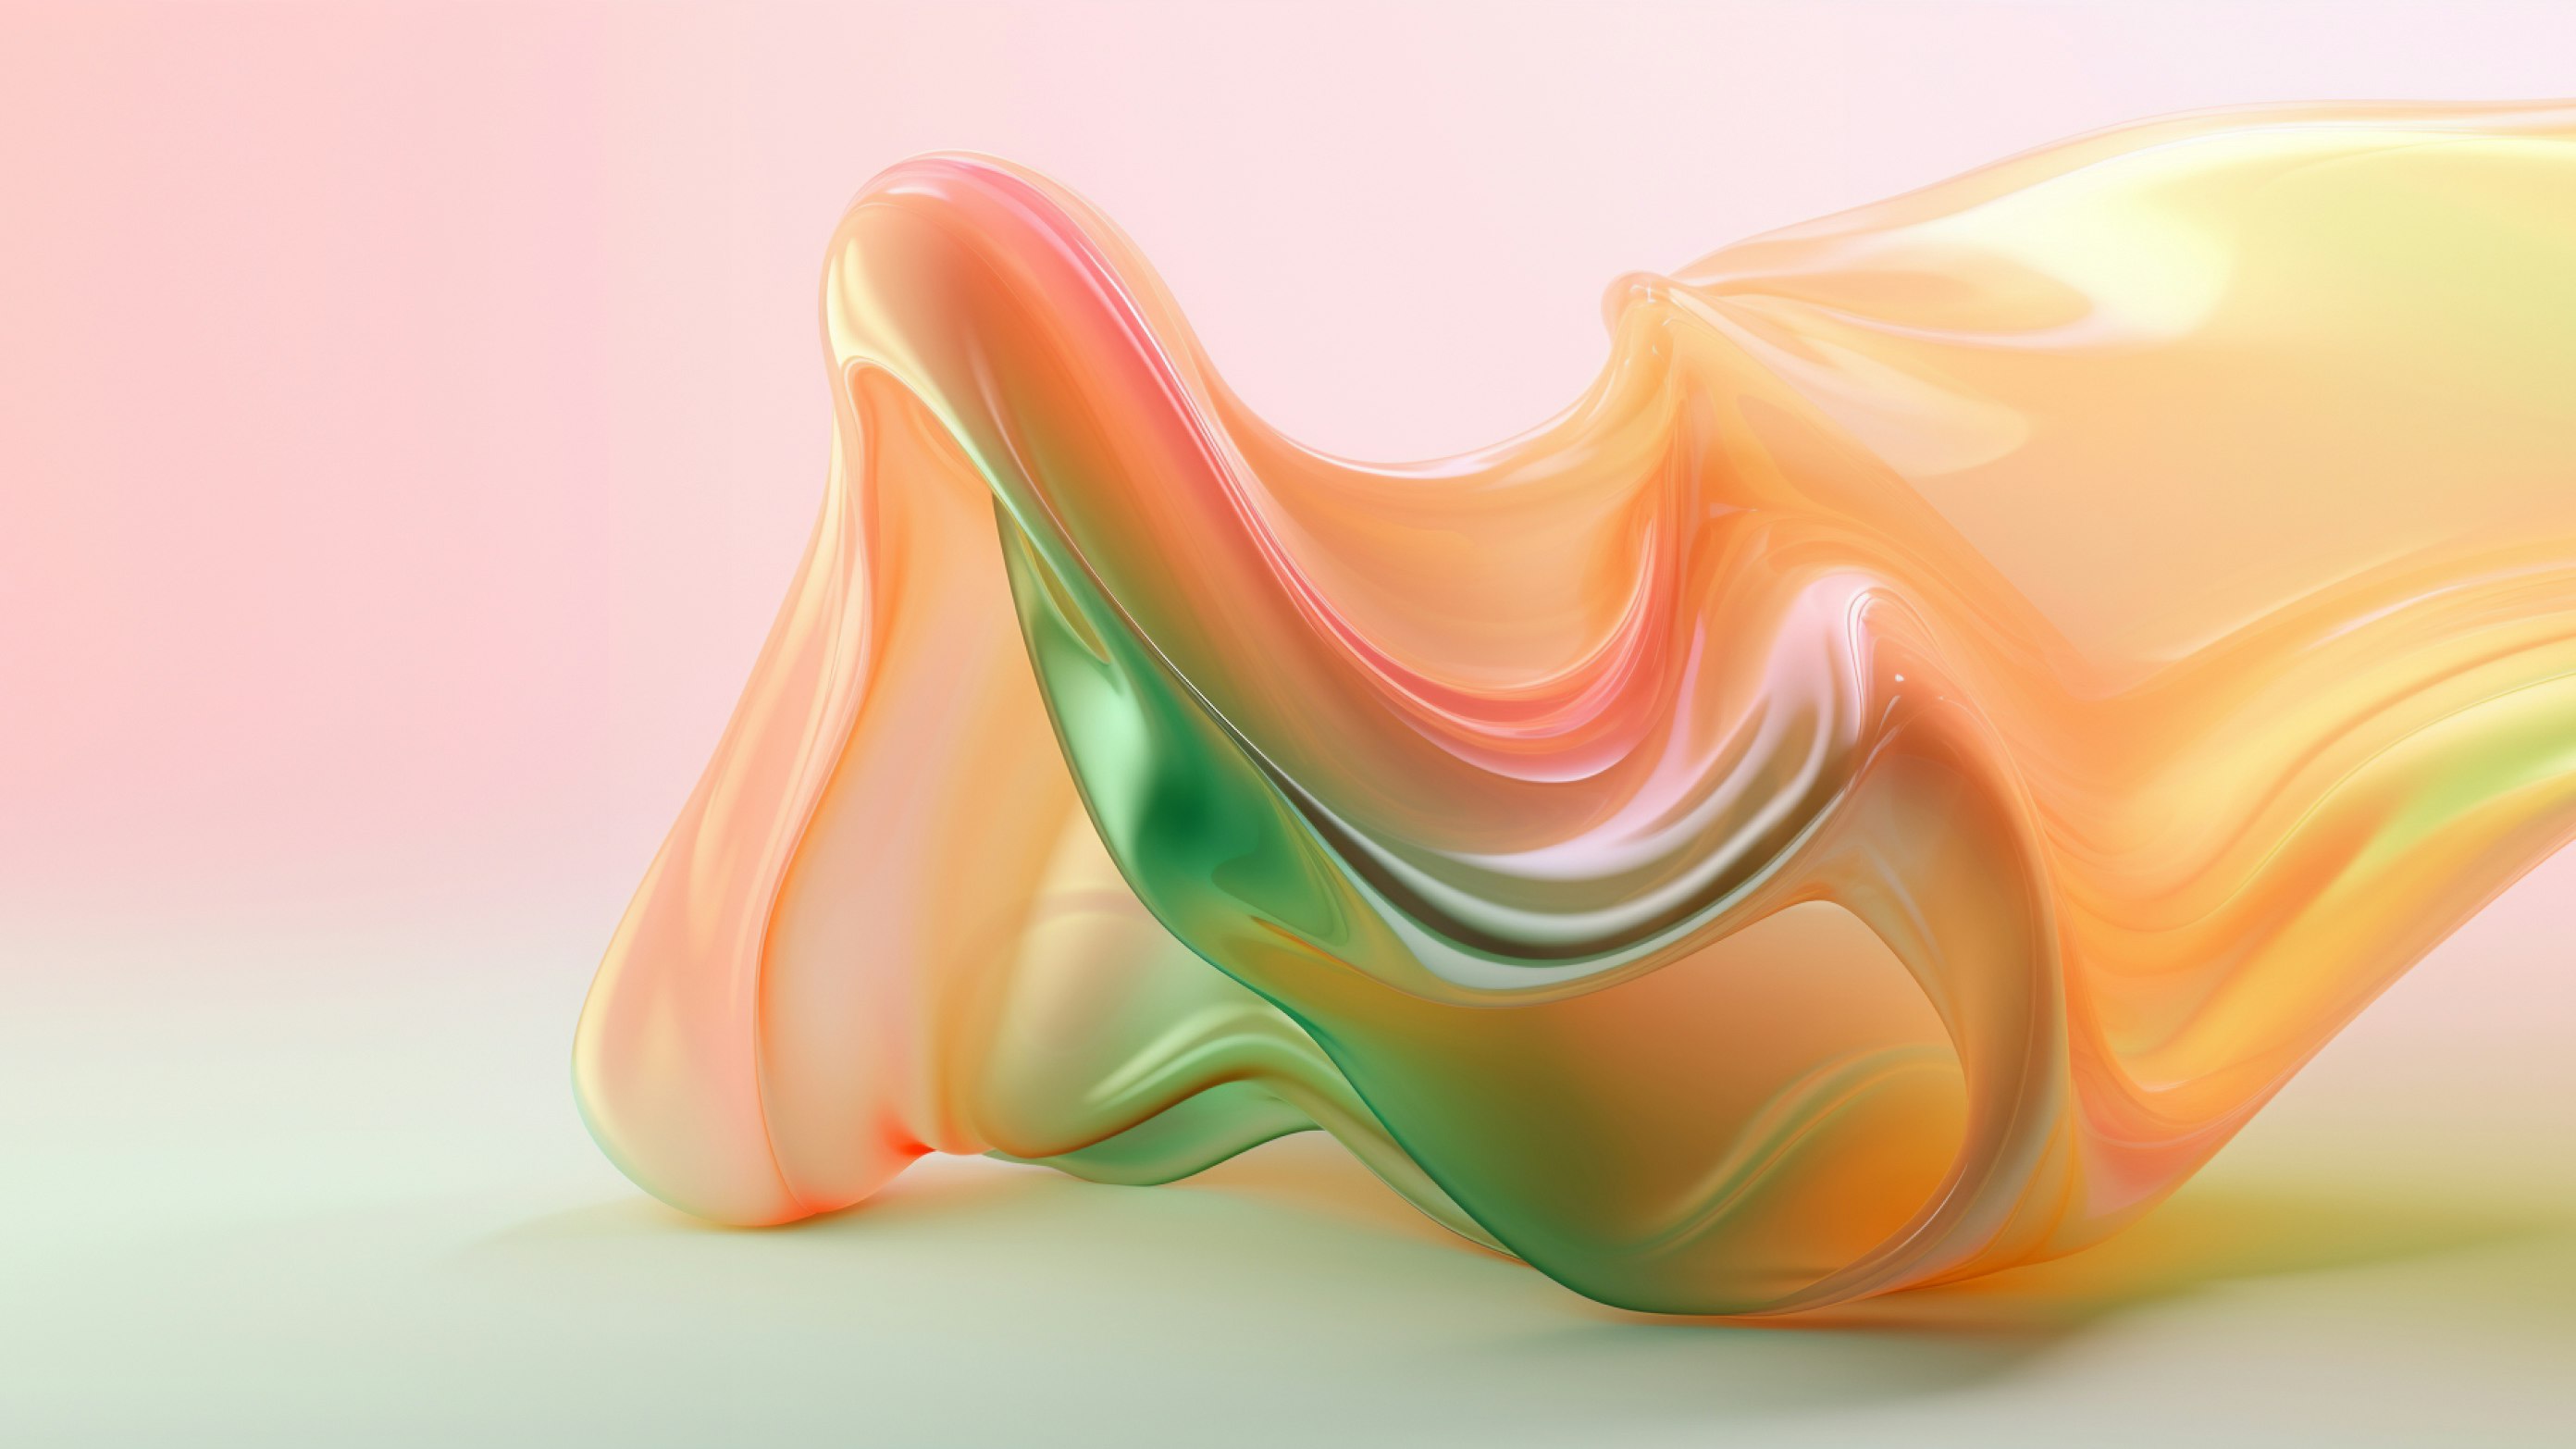 Render 3D generato con AI di un velo astratto semitrasparente e lucido su un piano dai toni rosa-arancio-verde